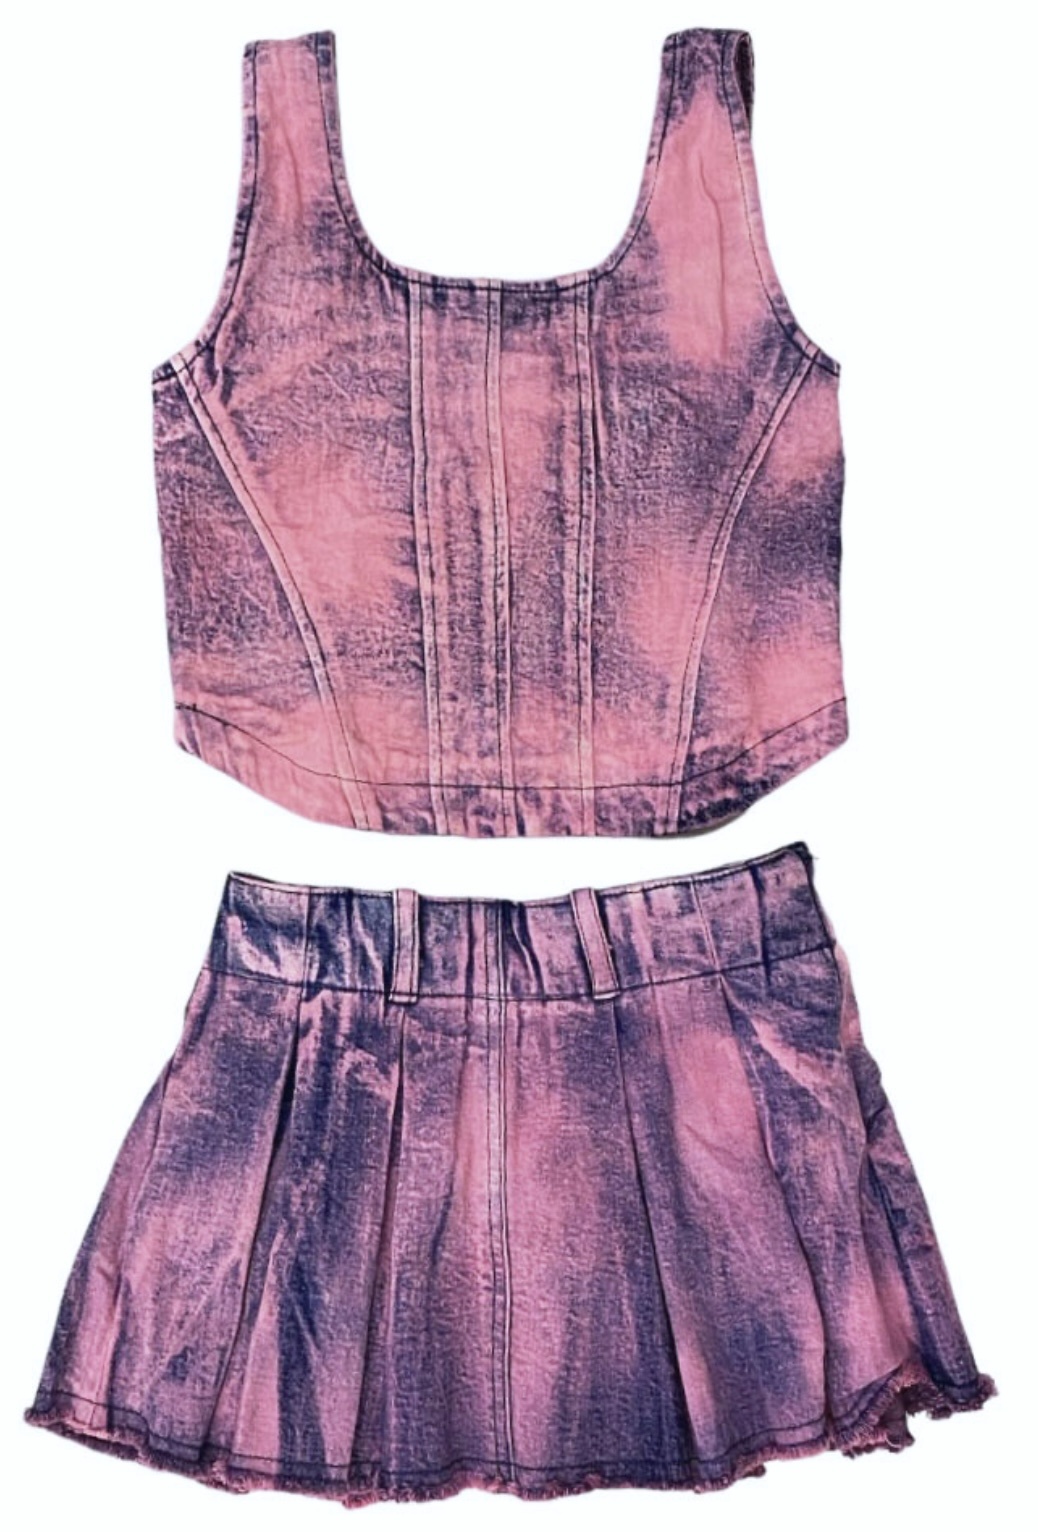 FBZ Lavender Dip Dye Denim Skirt Set